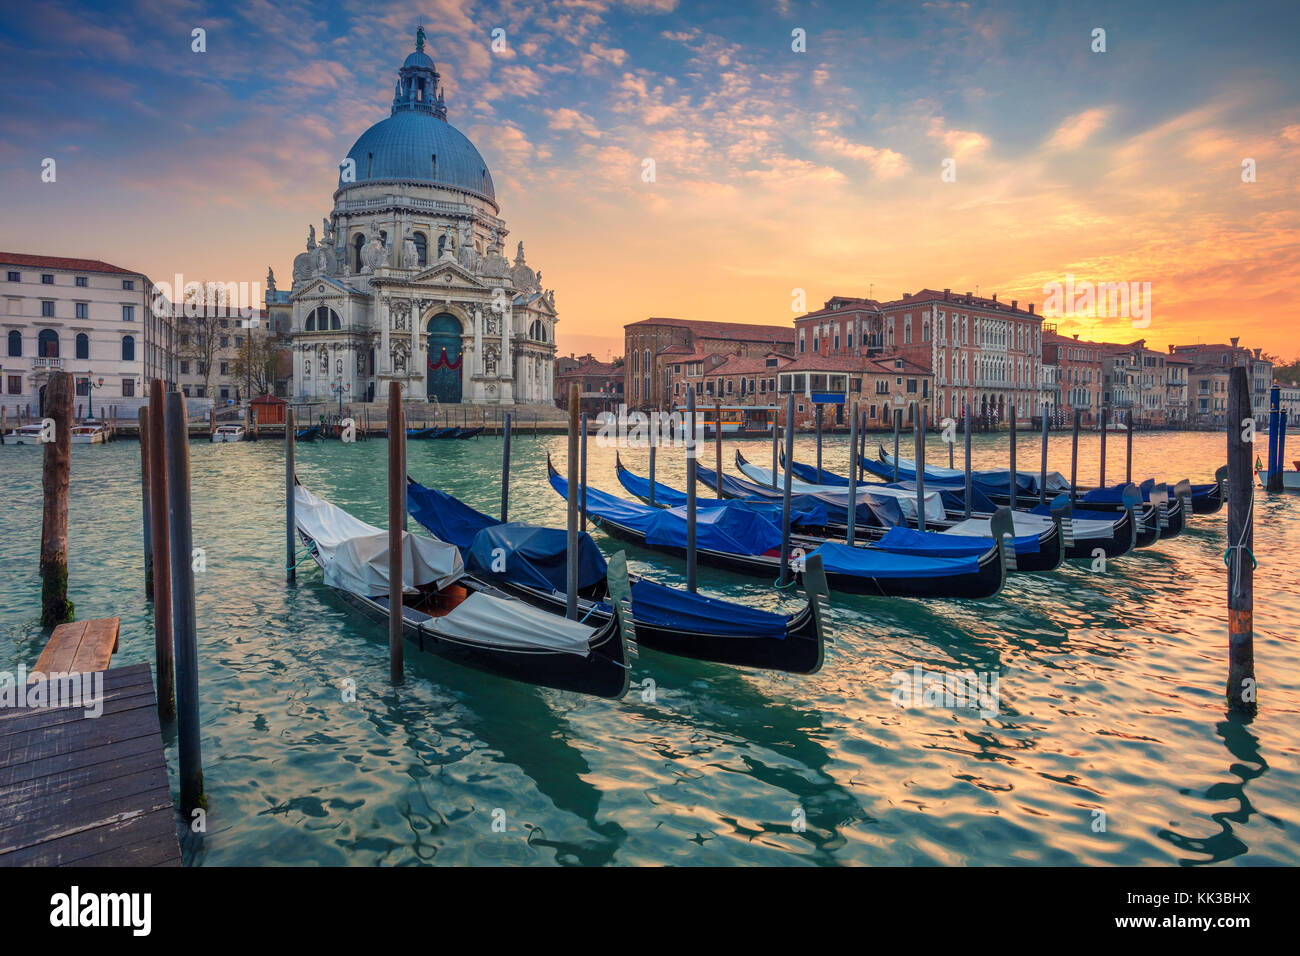 Venise. cityscape image de grand canal à Venise, avec la basilique Santa Maria della Salute en arrière-plan. Banque D'Images